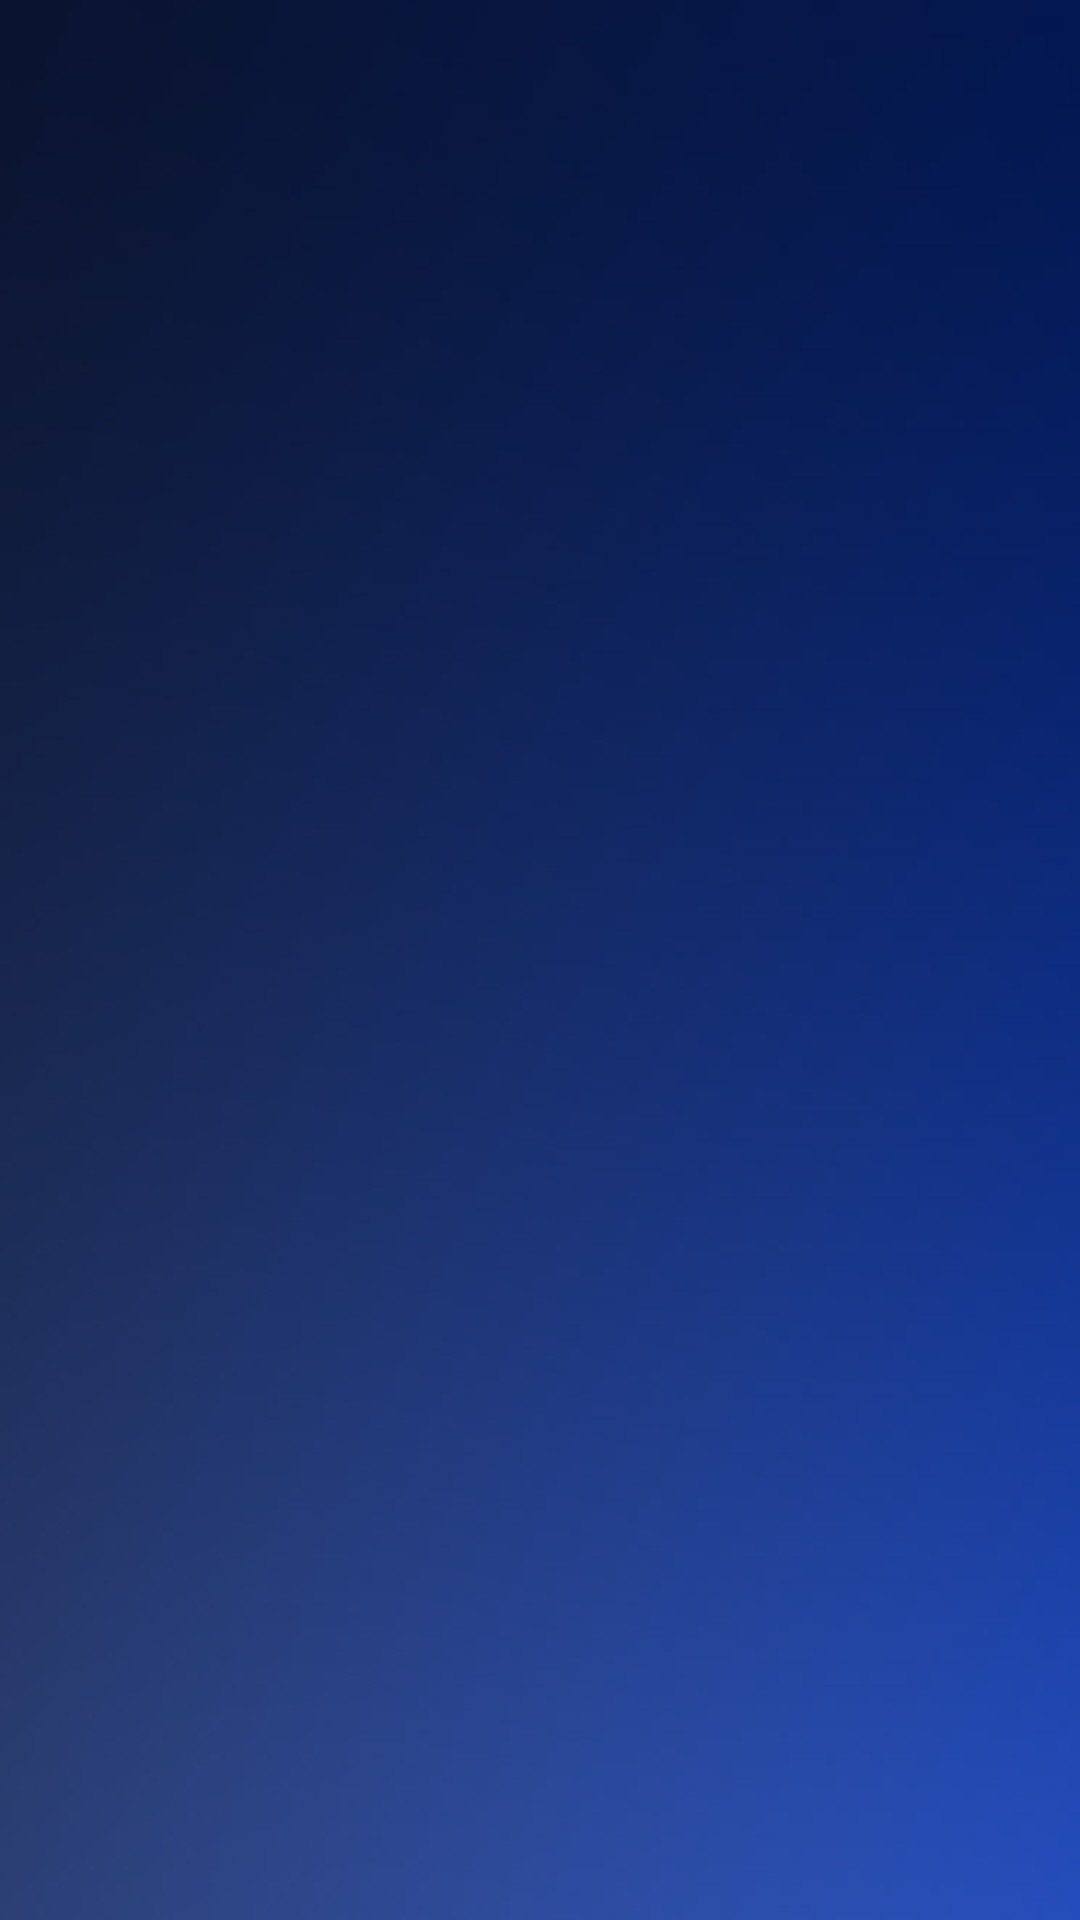 1080x1920 Navy Blue Iphone Wallpaper